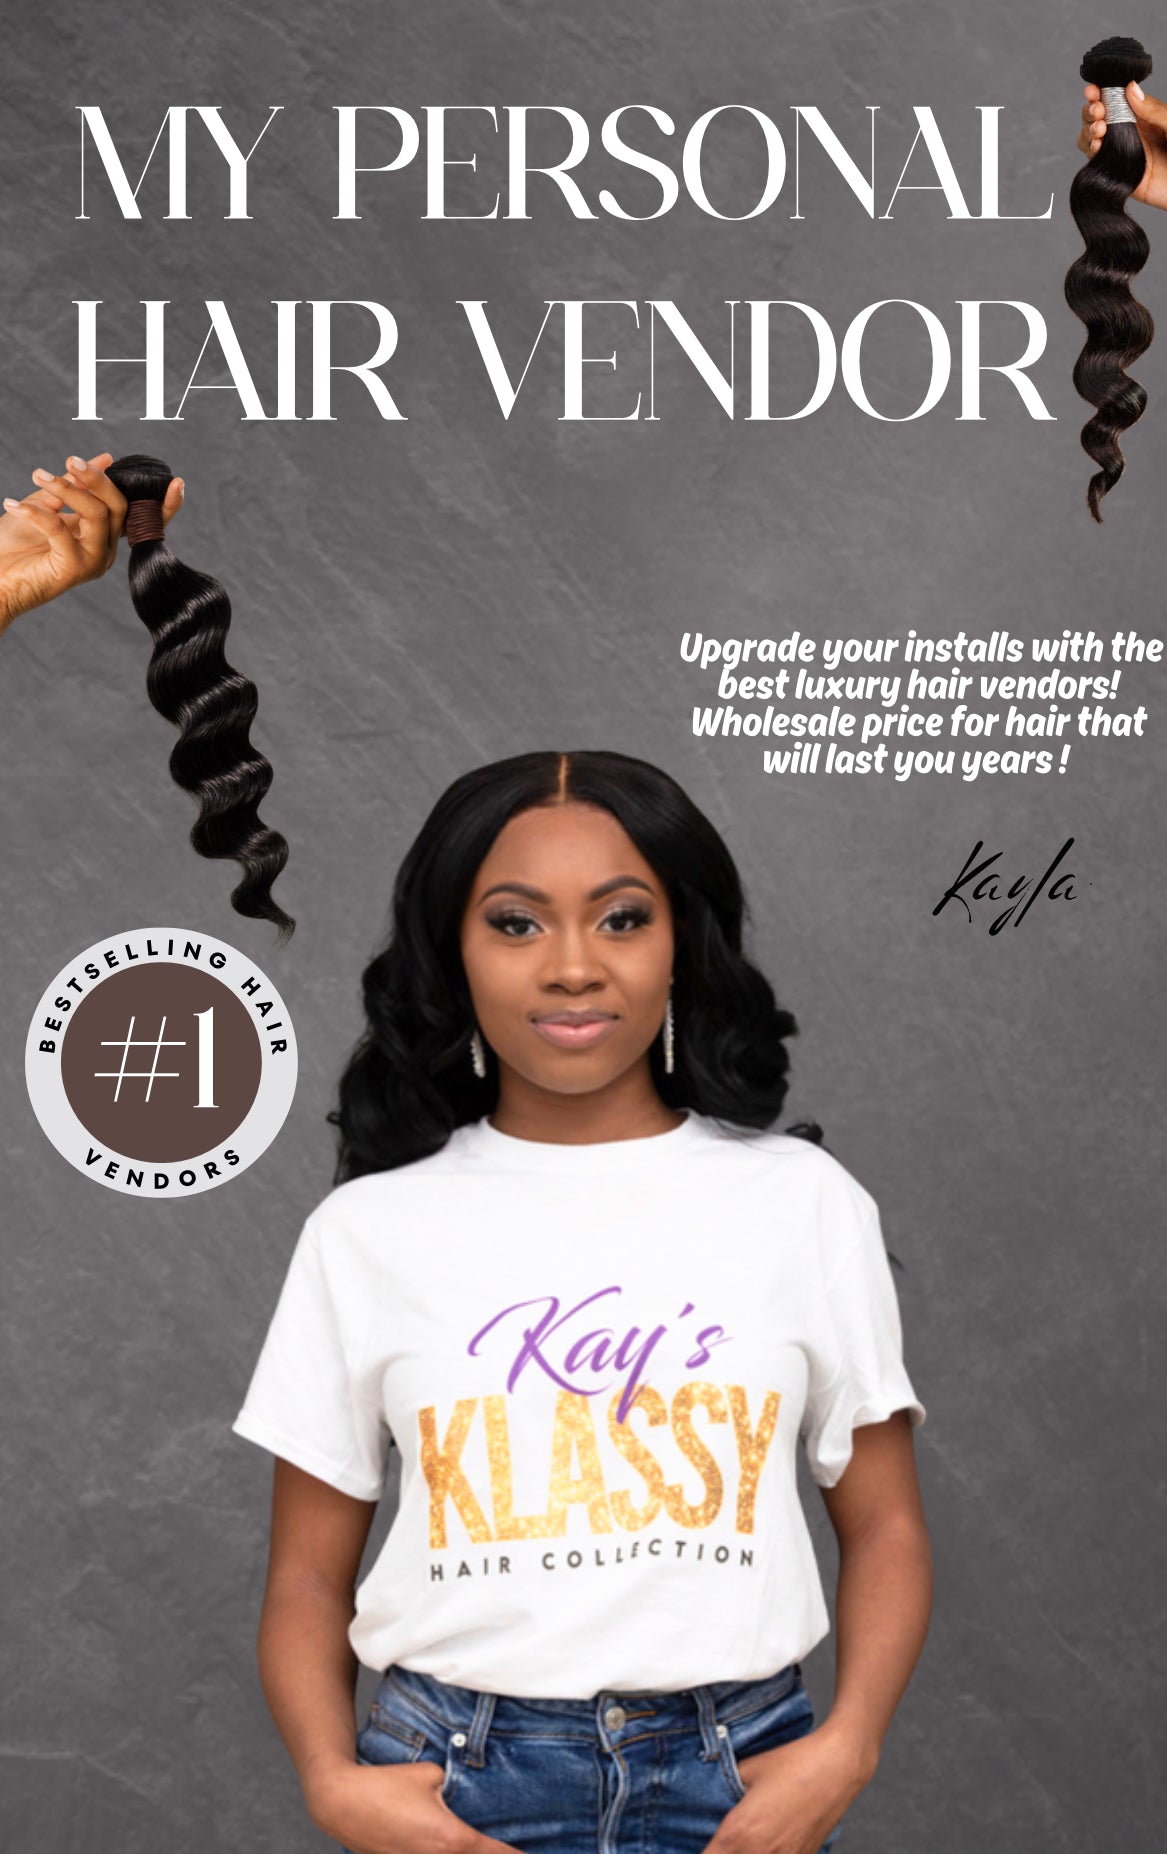 Kay’s Hair Vendors